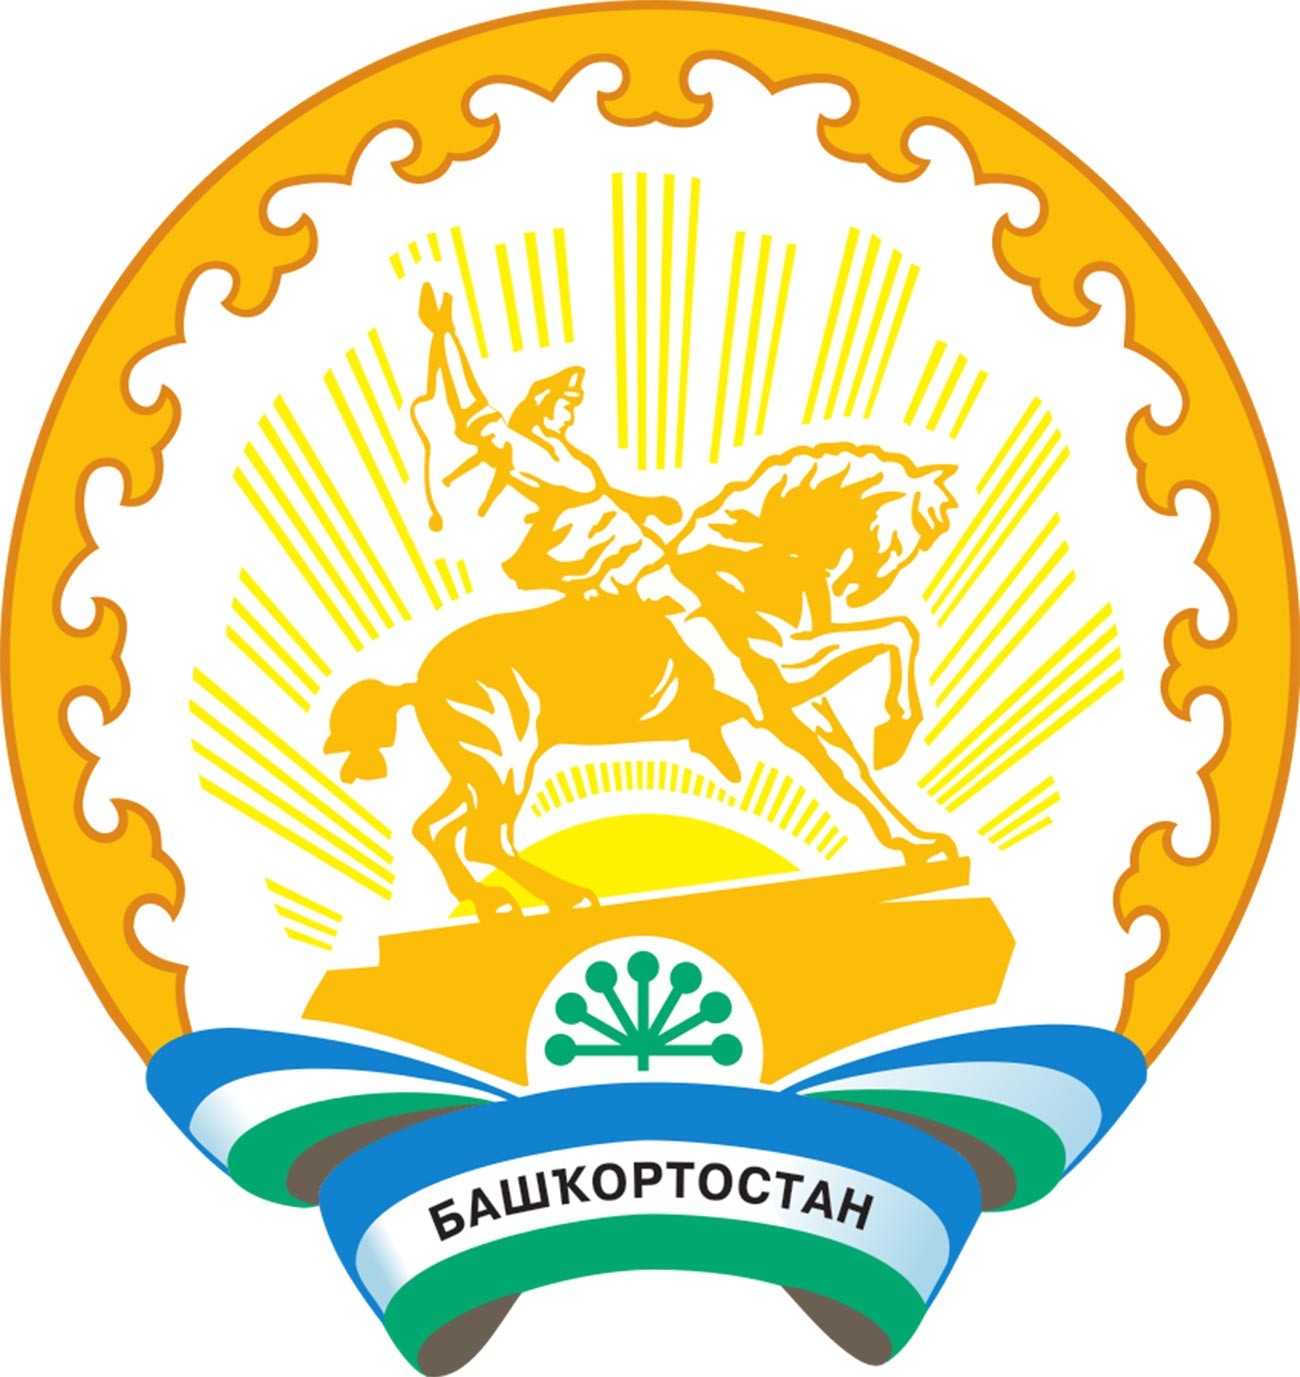 Lambang Republik Bashkortostan